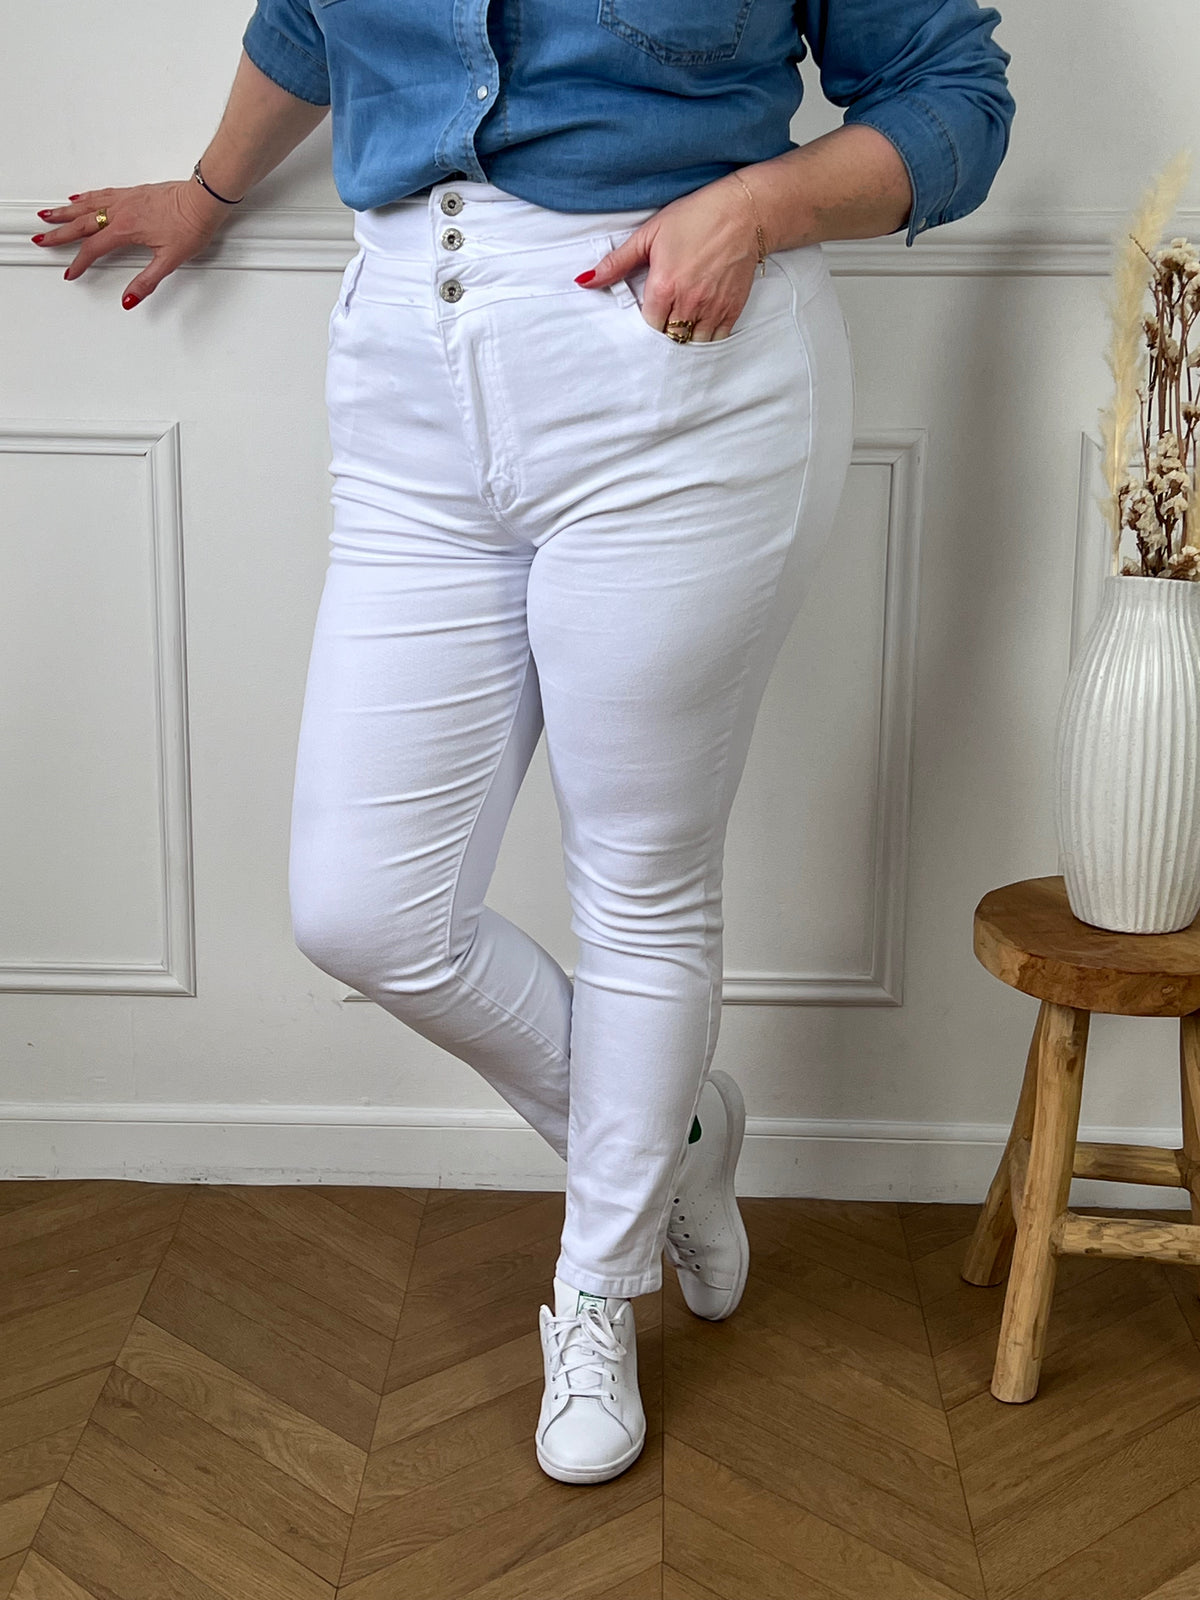 Découvrez notre jean blanc gainant taille haute Curve Ethan! Il est parfait pour mettre en valeur votre silhouette tout en étant confortable à porter. Son design gainant offre un maintien optimal tandis que sa taille haute mettra en valeur votre taille. Un essentiel pour toutes les femmes!